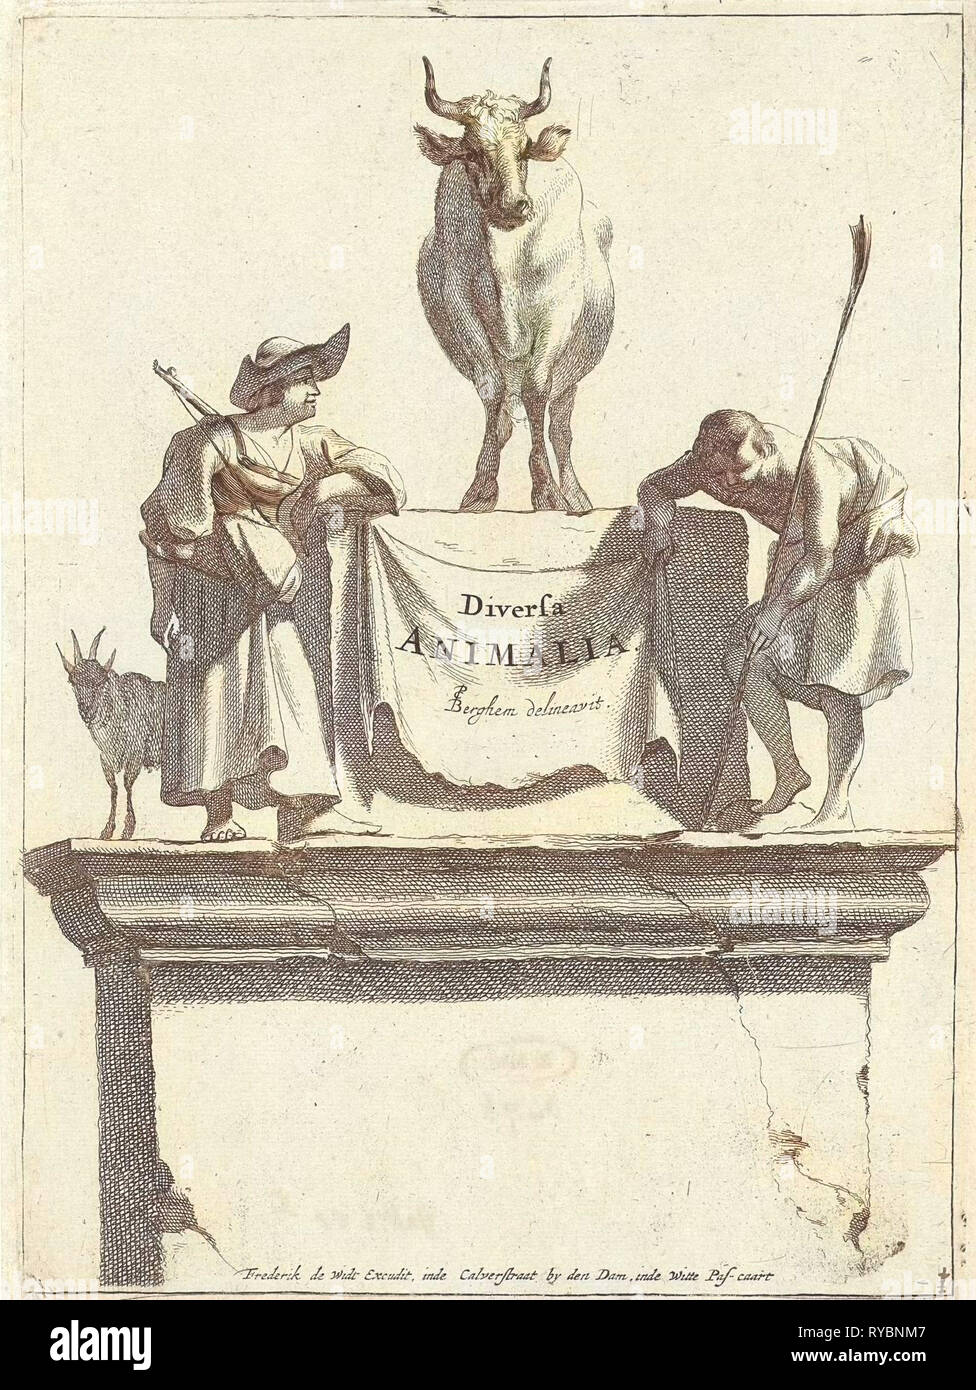 Title print for Diversa Animalia, Jan de Visscher, Frederik de Wit, 1643-1706 Stock Photo